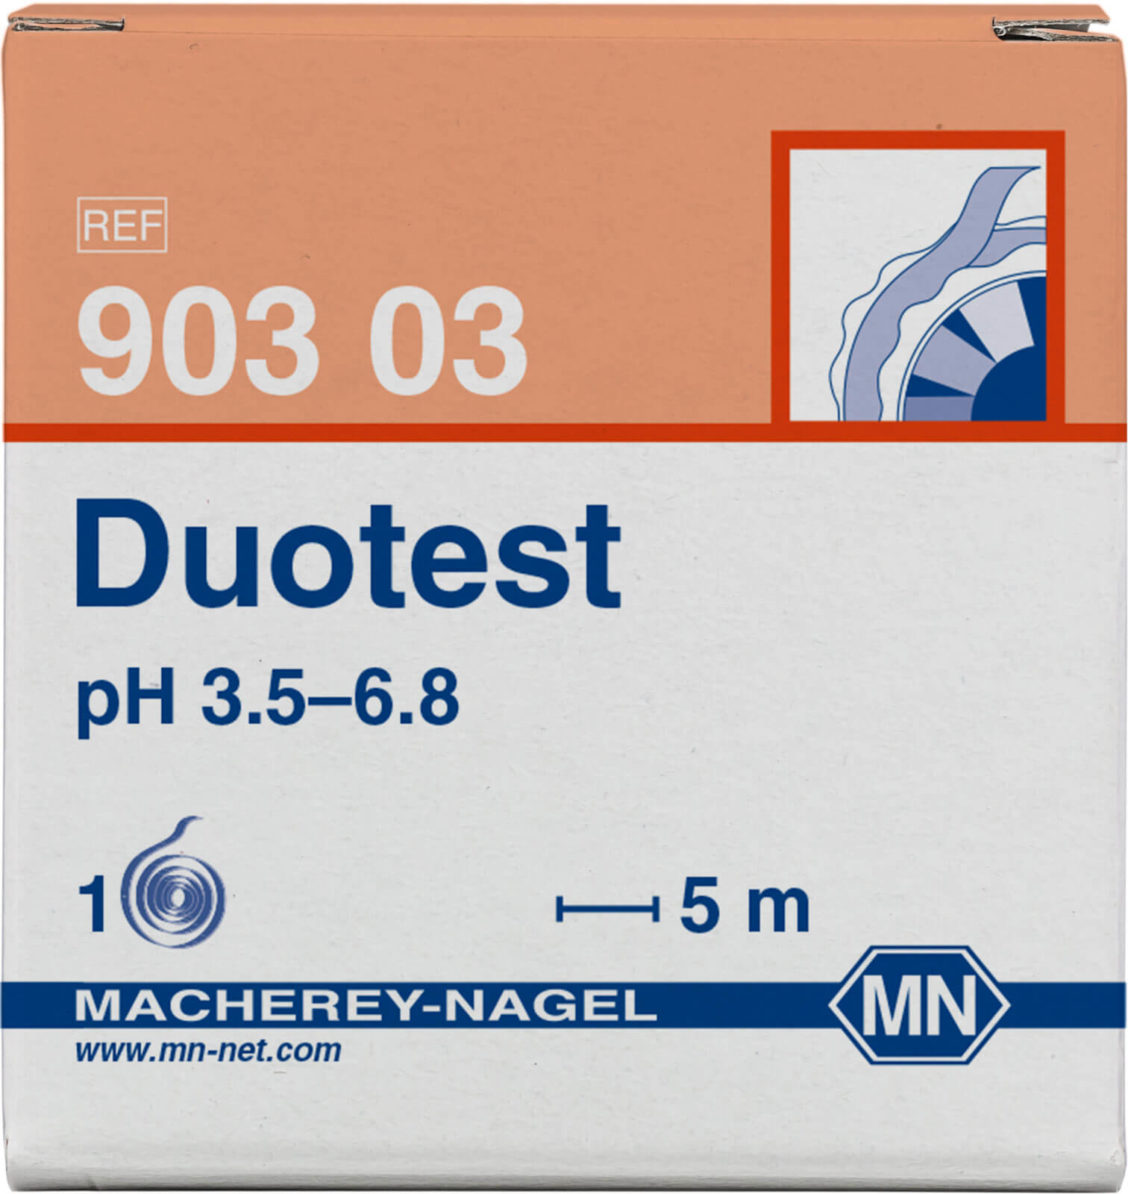 M&N 90303 Duotest pH 3,5-6,8